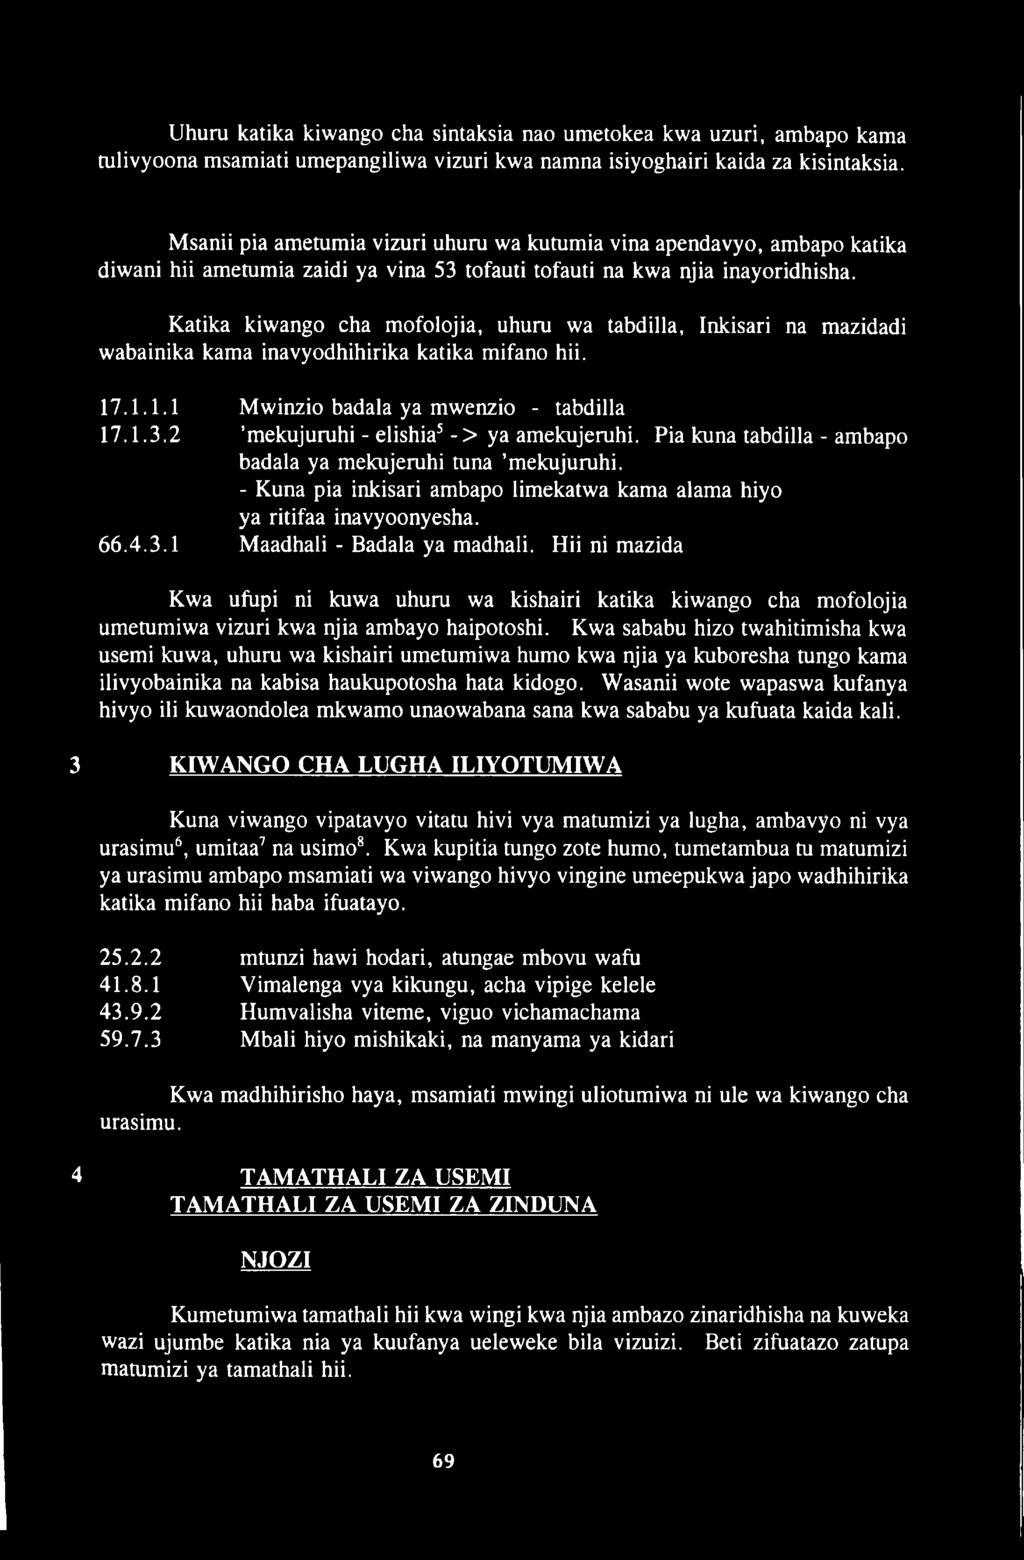 Katika kiwango cha mofolojia, uhuru wa tabdilla, Inkisari na mazidadi wabainika kama inavyodhihirika katika mifano hii. 17.1.1.1 Mwinzio badala ya mwenzio - tabdilla 17.1.3.